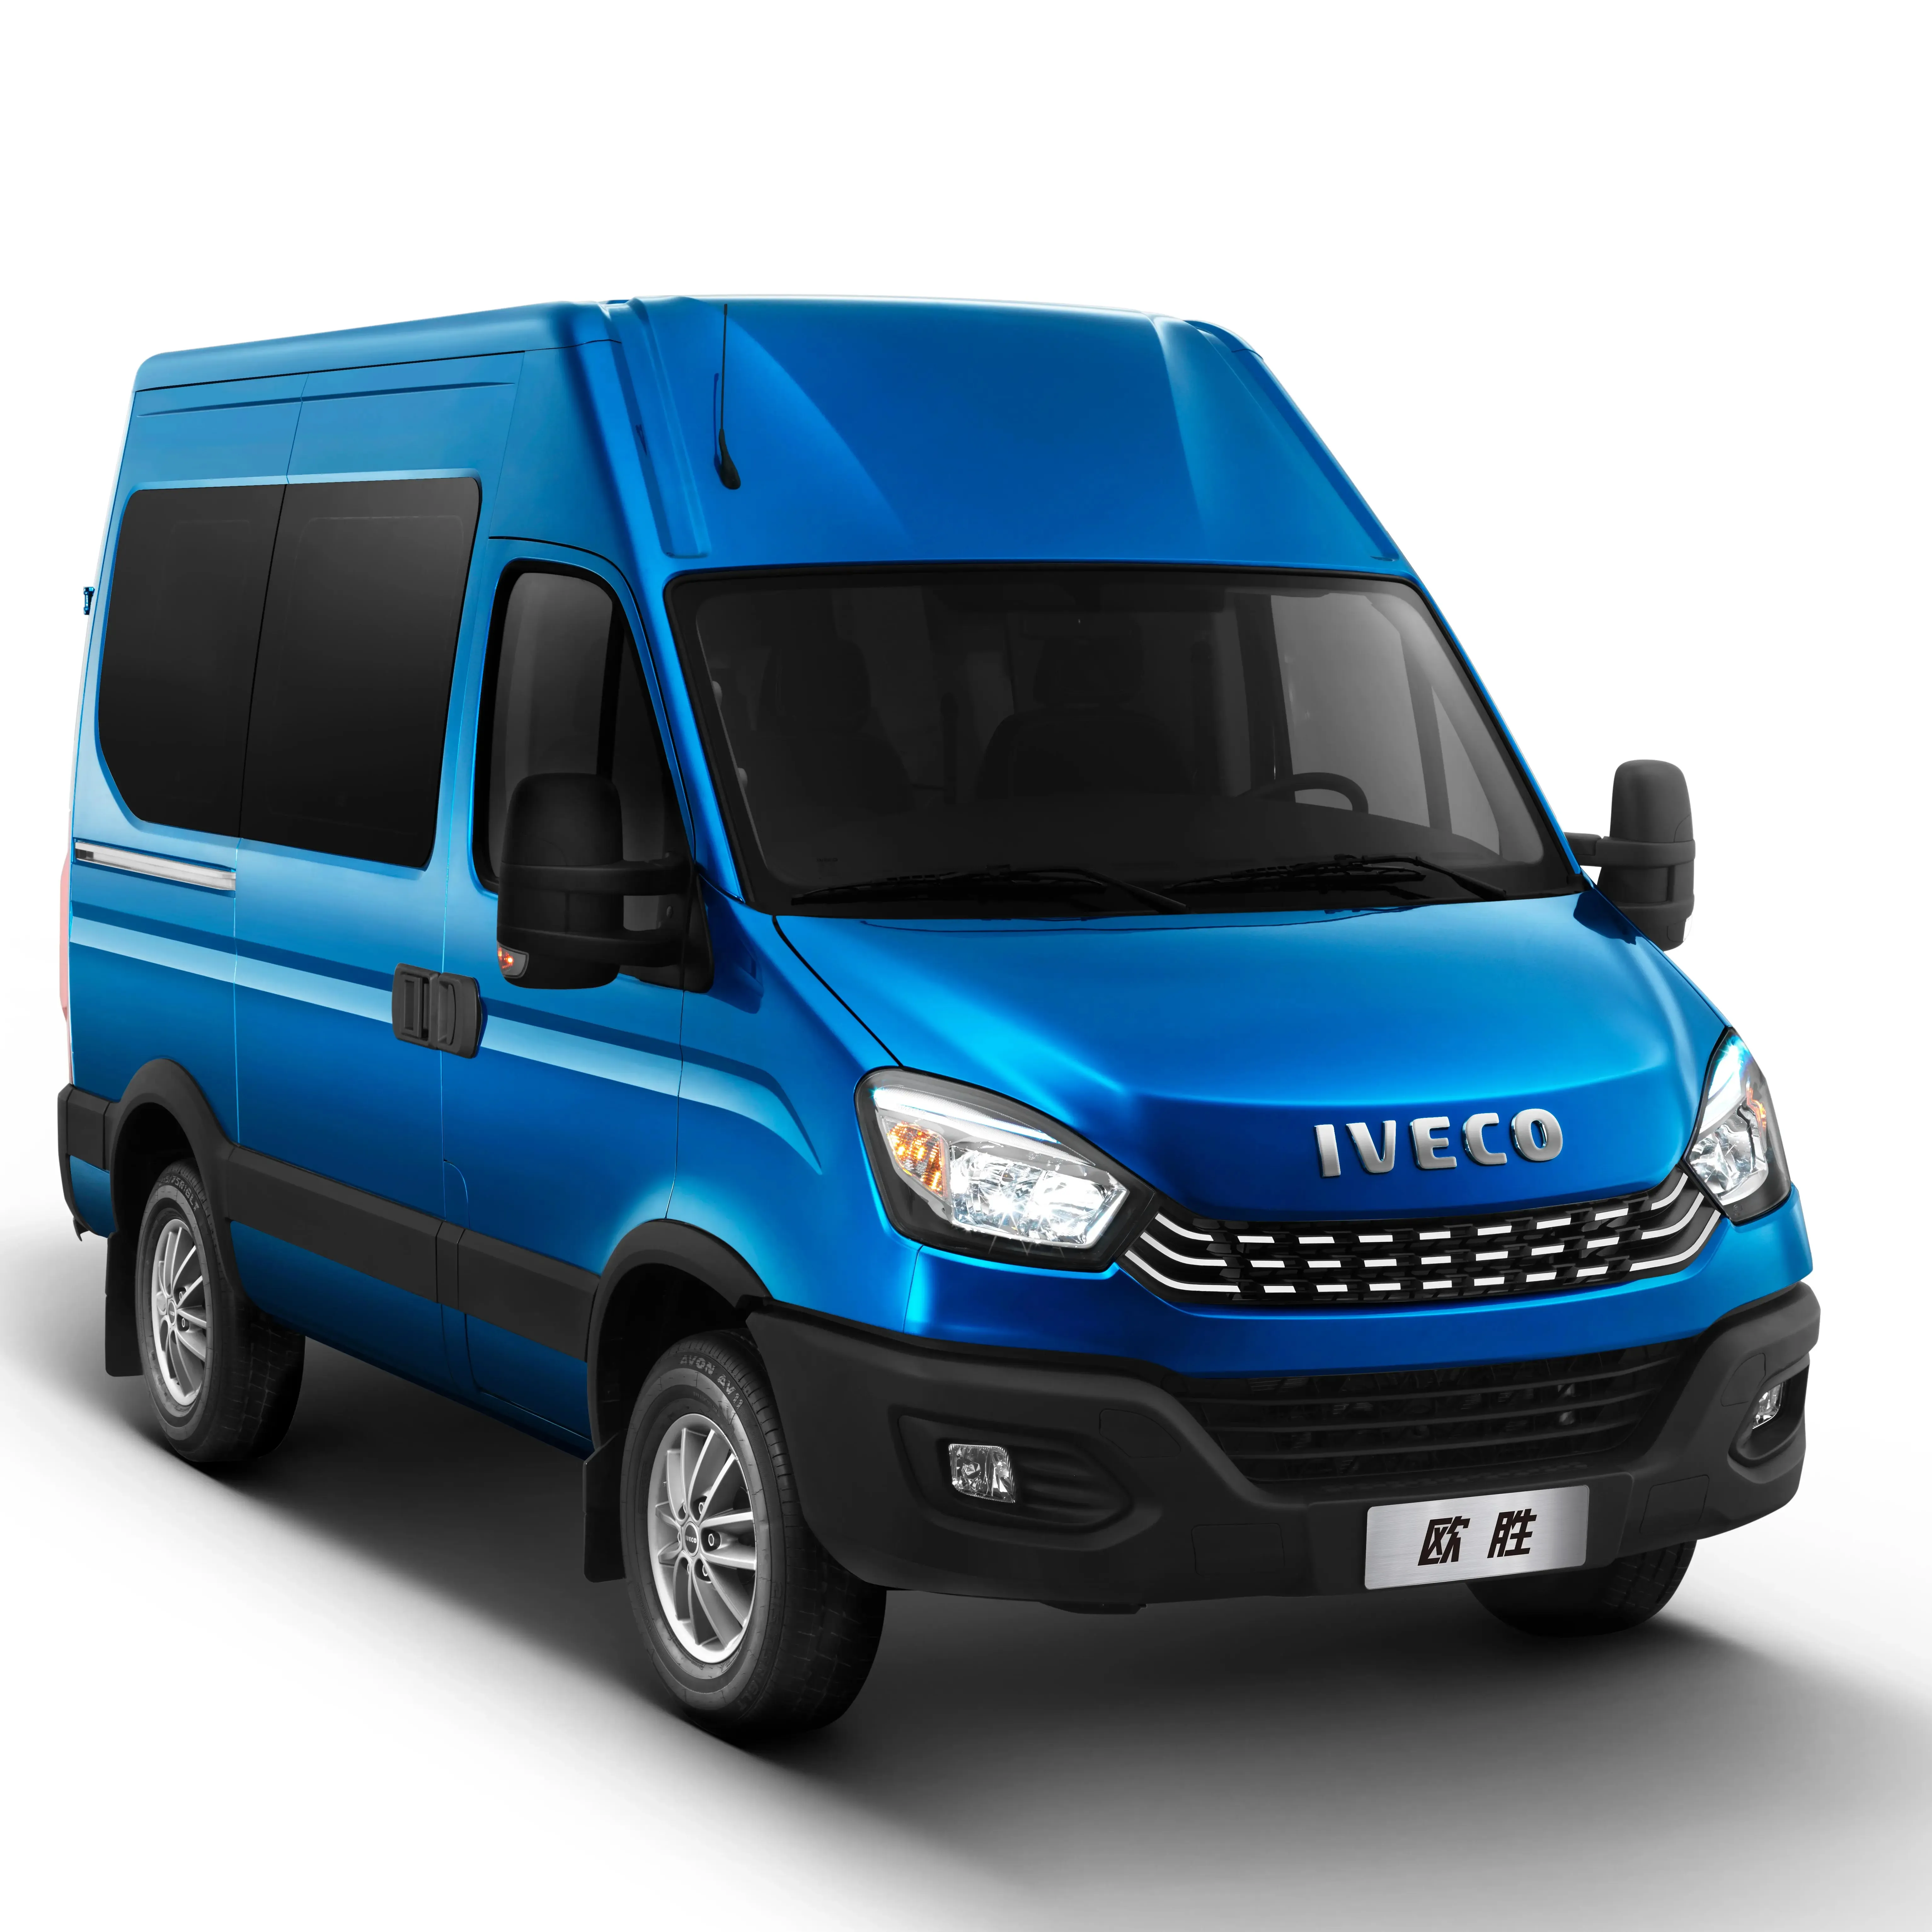 Iveco đa chức năng van có thể được sử dụng như một xe buýt hoặc xe tải 3.0L 125kw hộp số tự động sử dụng xe buýt để bán